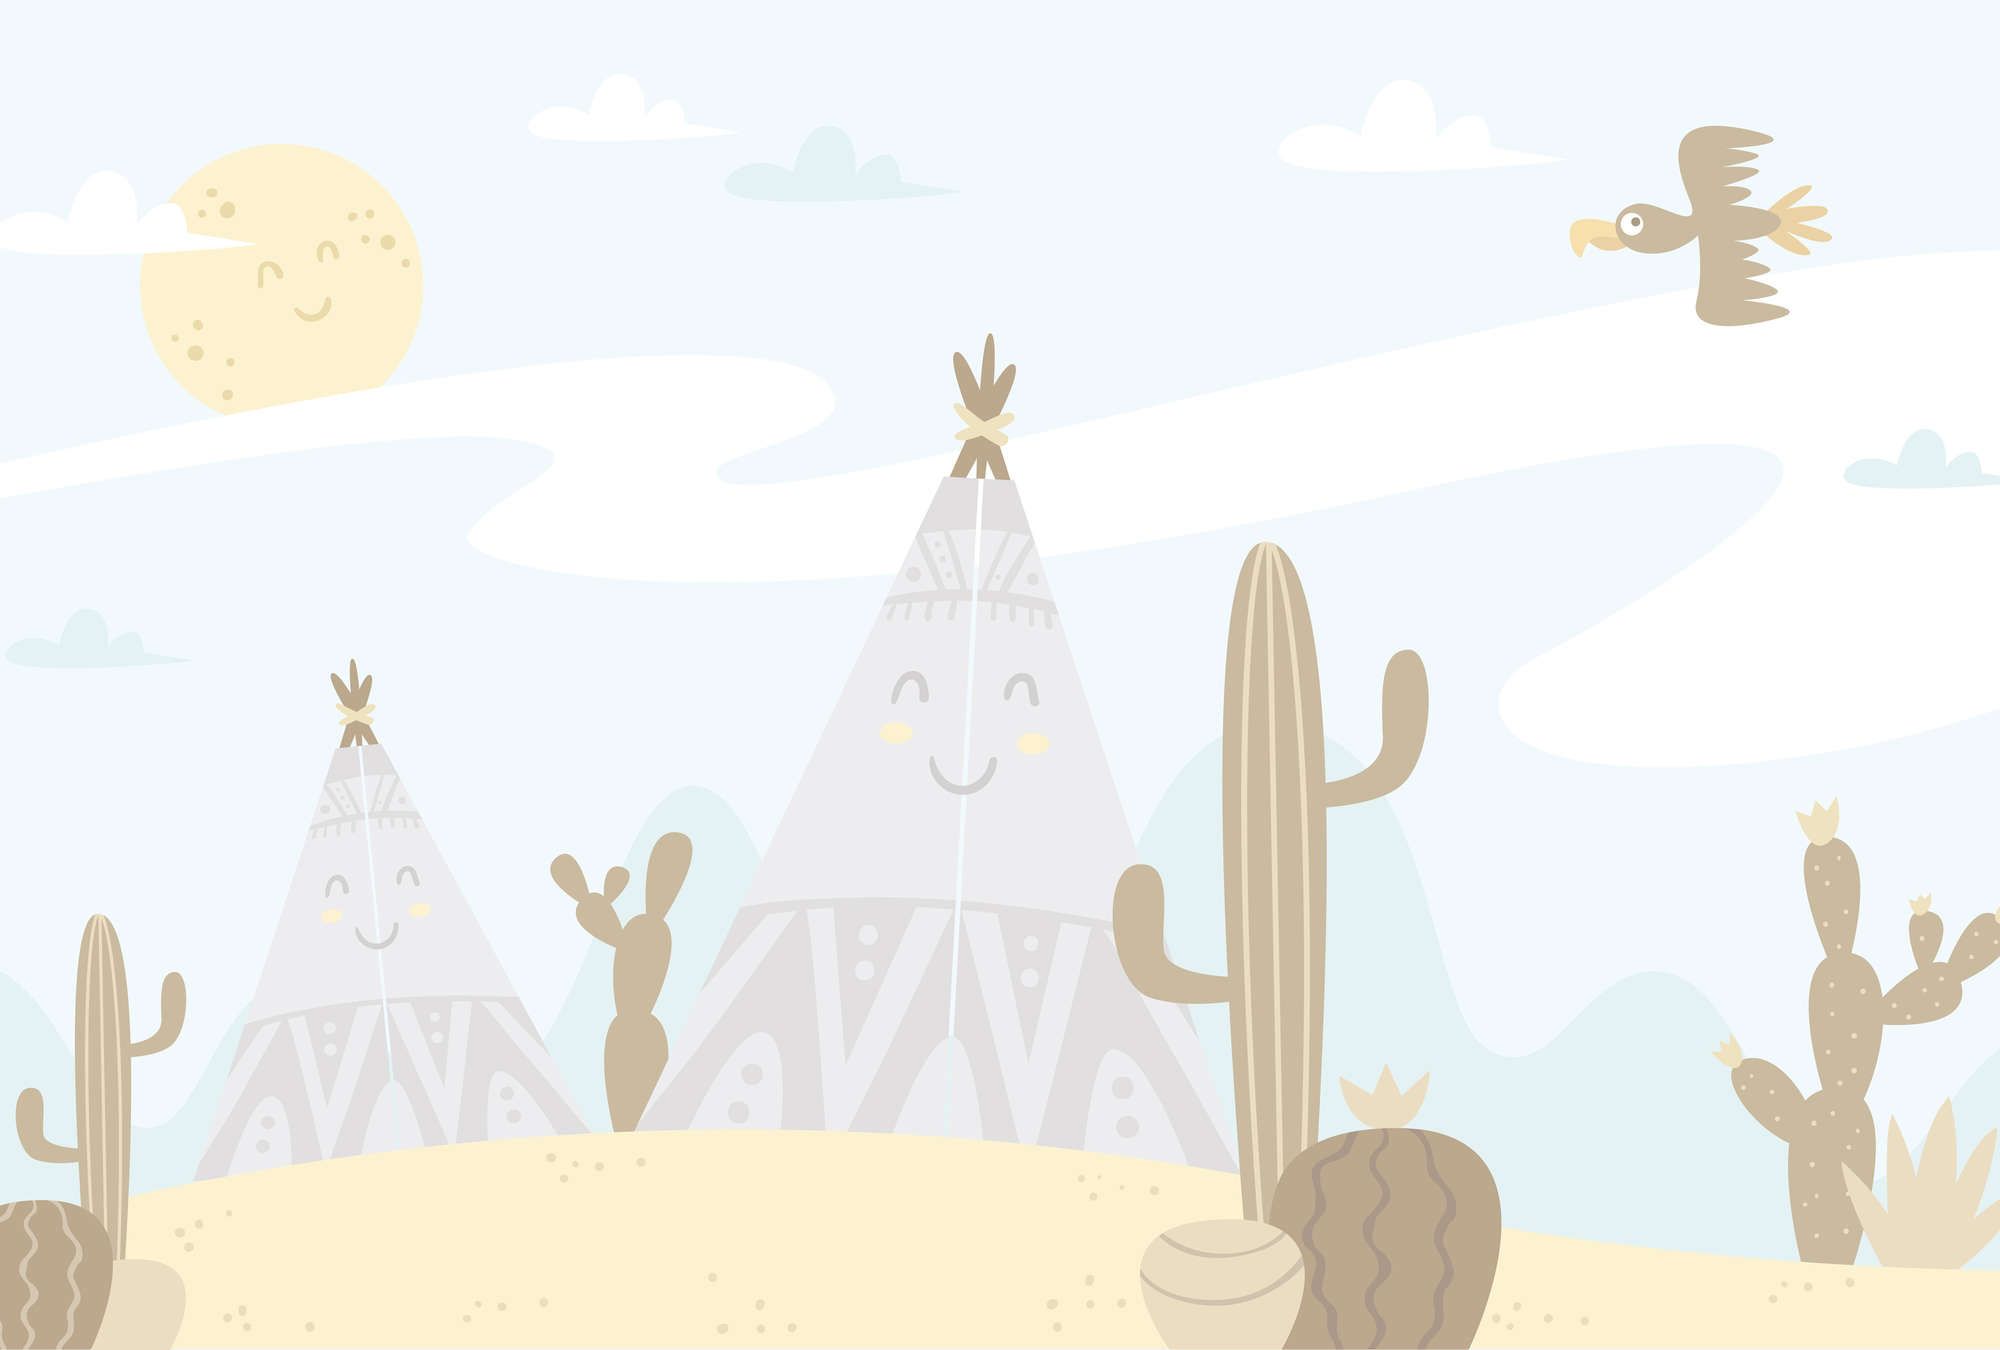             Digital behang Woestijnlandschap met Tipi's - Glad & licht glanzend vlies
        